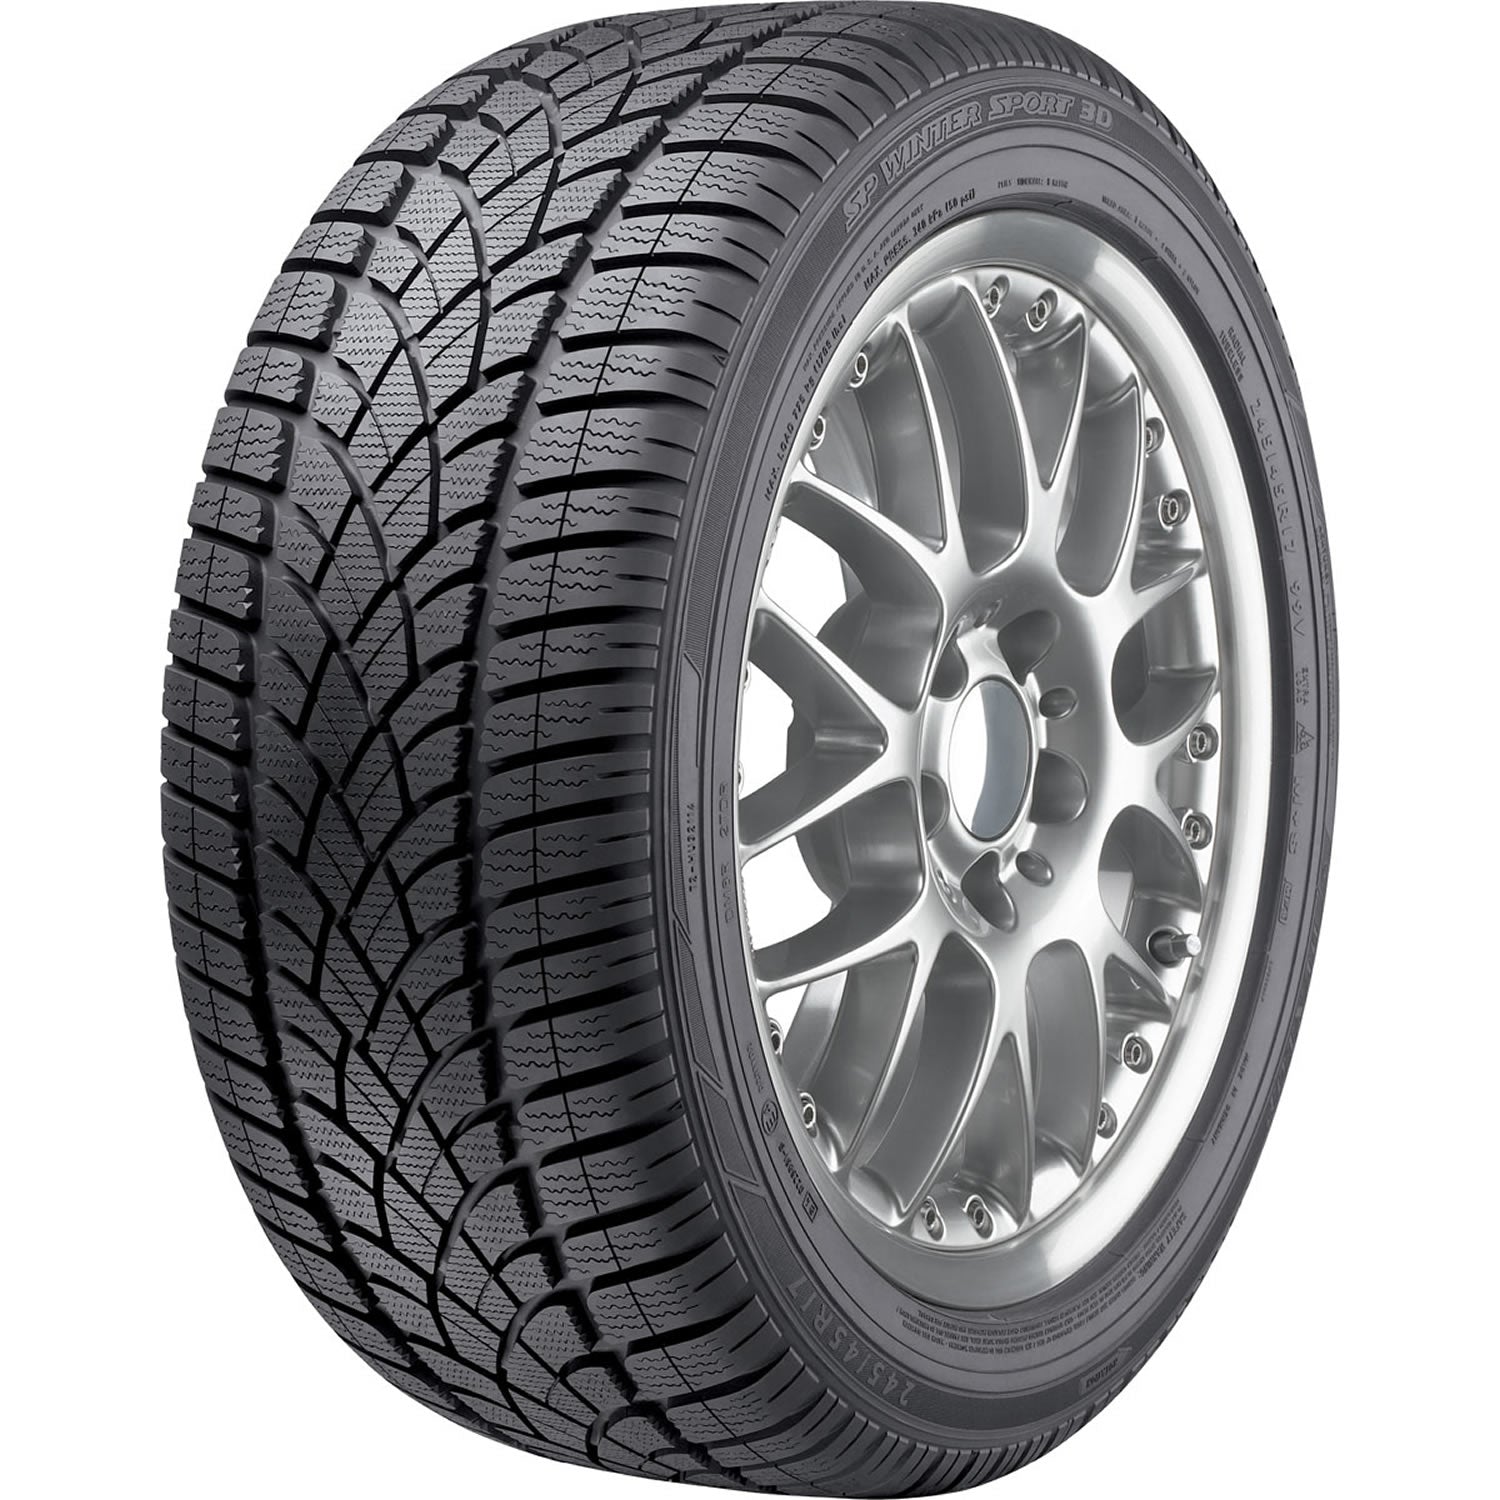 DUNLOP SP WINTER SPORT 3D 225/50R17 (25.9X9.2R 17) Tires